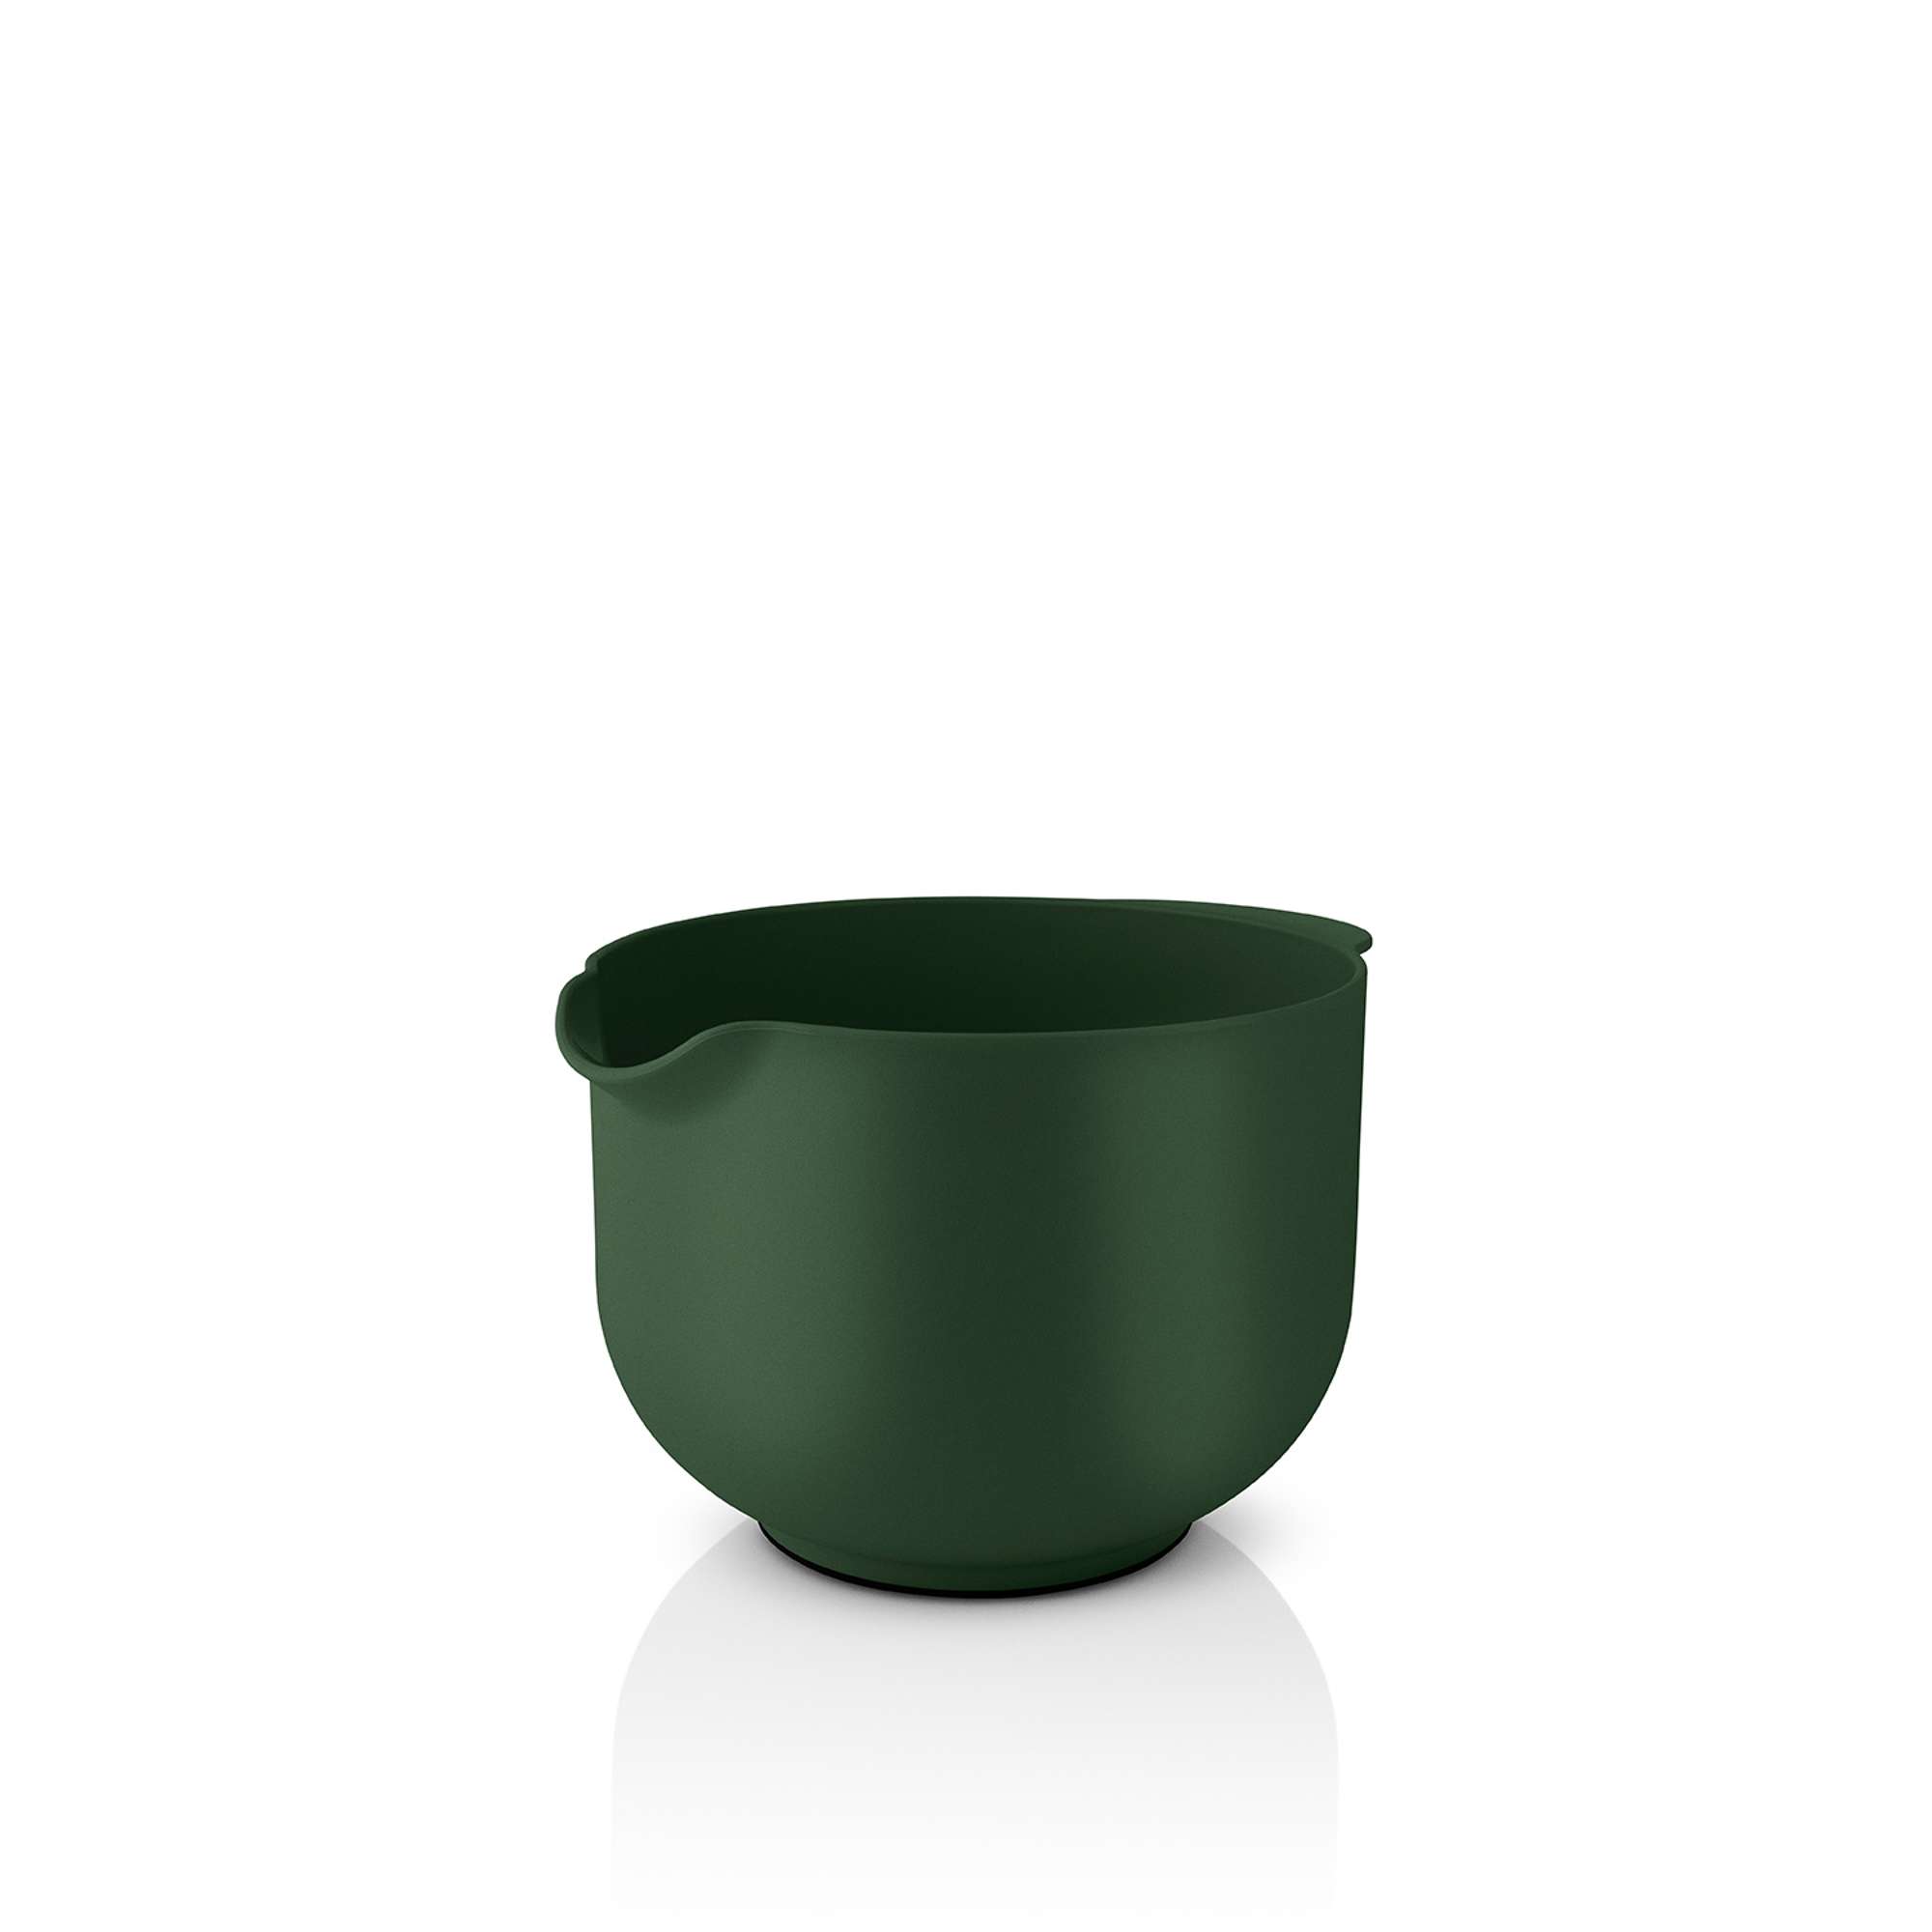 Eva mixing bowl - 2.0 l - Green